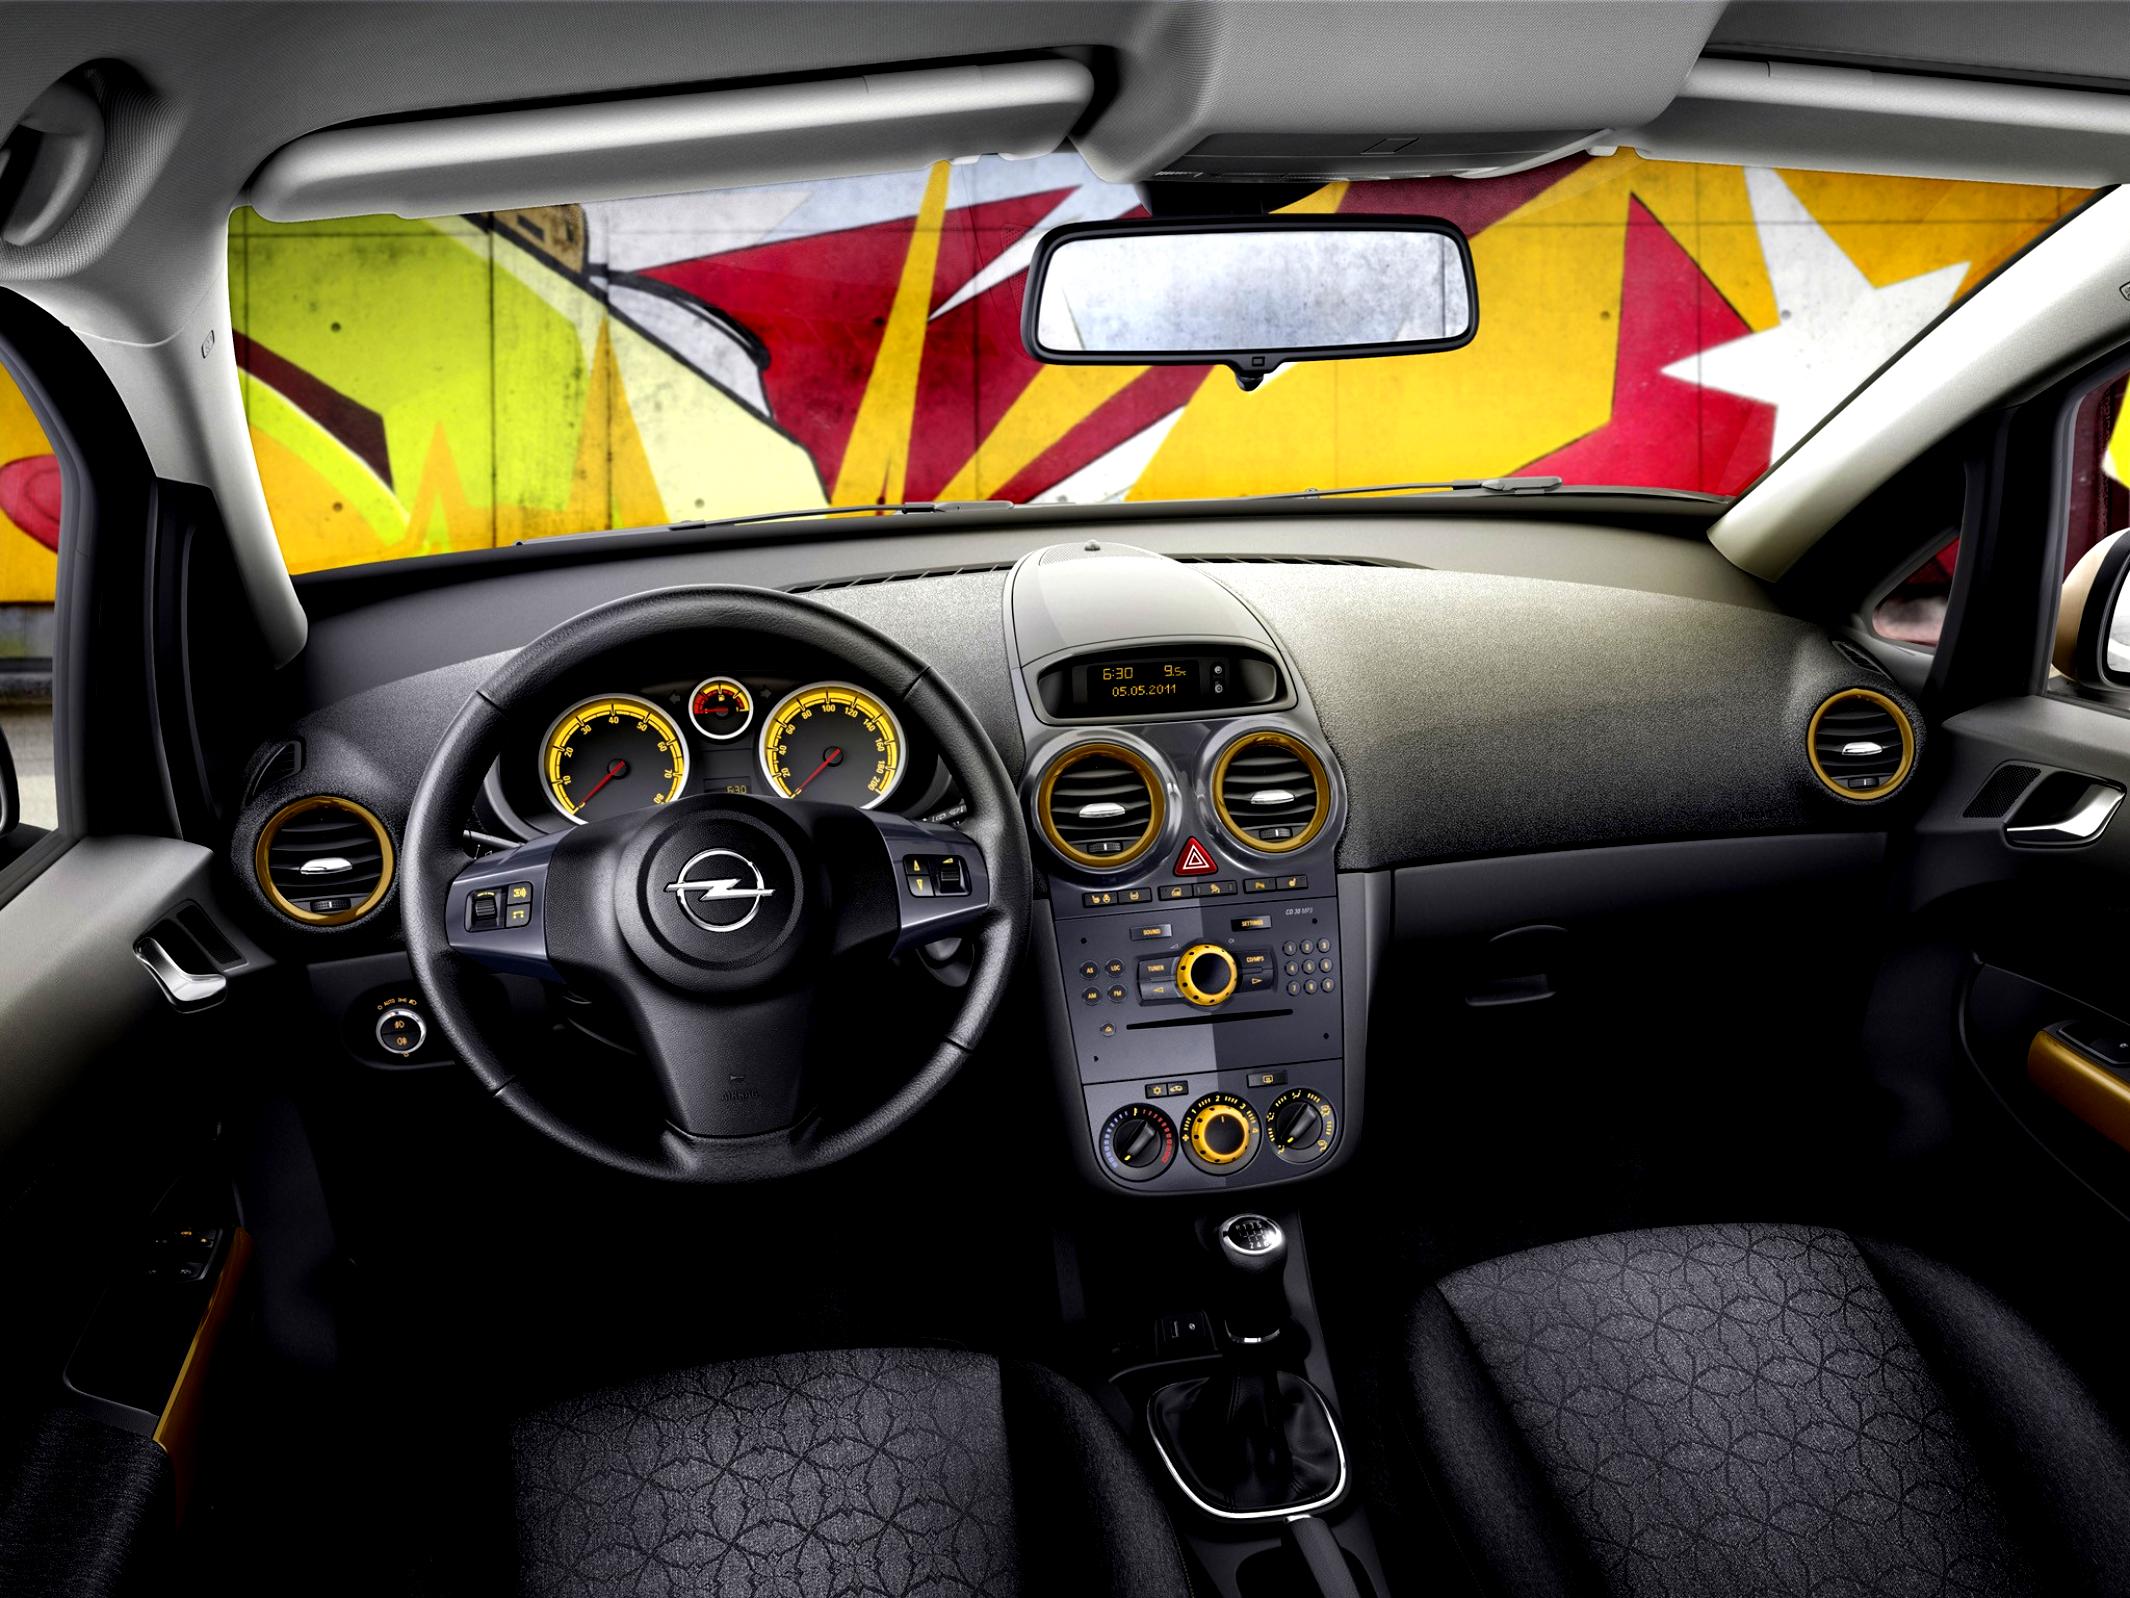 Поломка регулятора направления воздуха в салоне Opel Corsa D фото